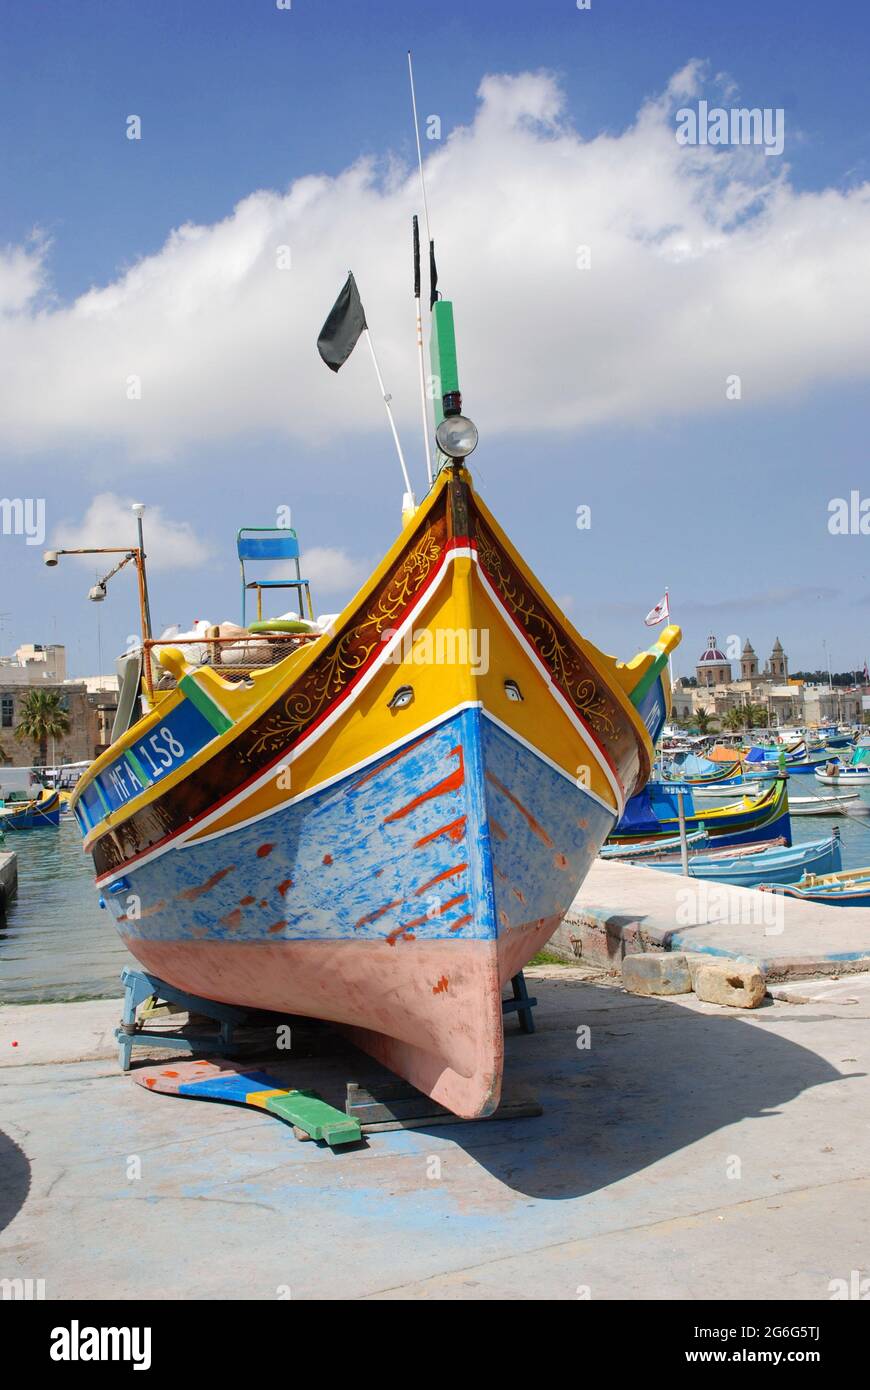 Luzzu, barca da pesca tradizionale dipinta in colori luminosi con occhi tipici sulla prua, Malta, Marsaxlokk Foto Stock